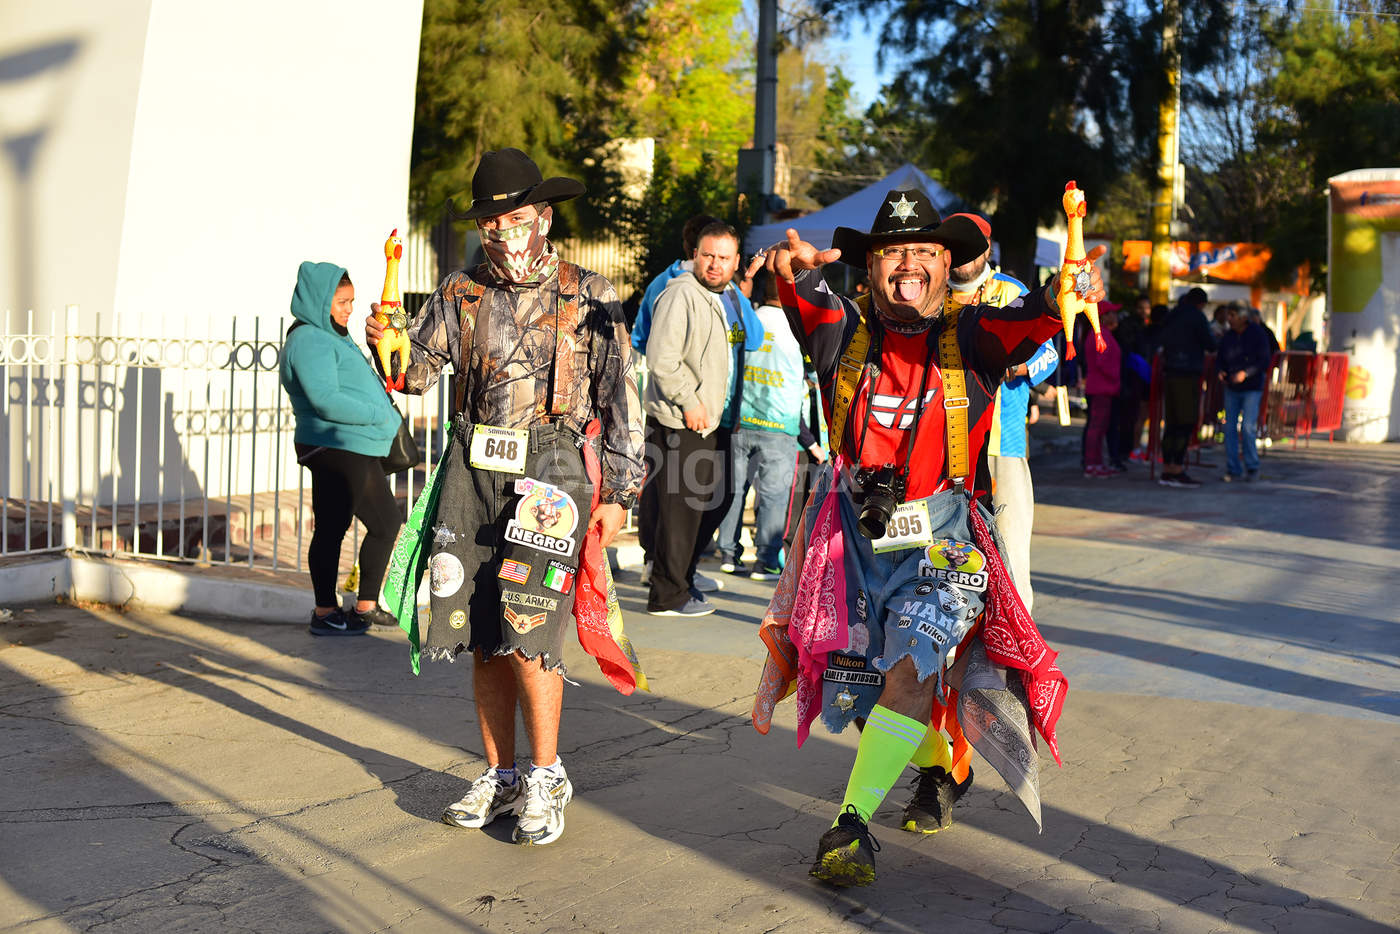 Los tradicionales disfraces se hicieron presentes en la carrera. (Ernesto Ramírez)